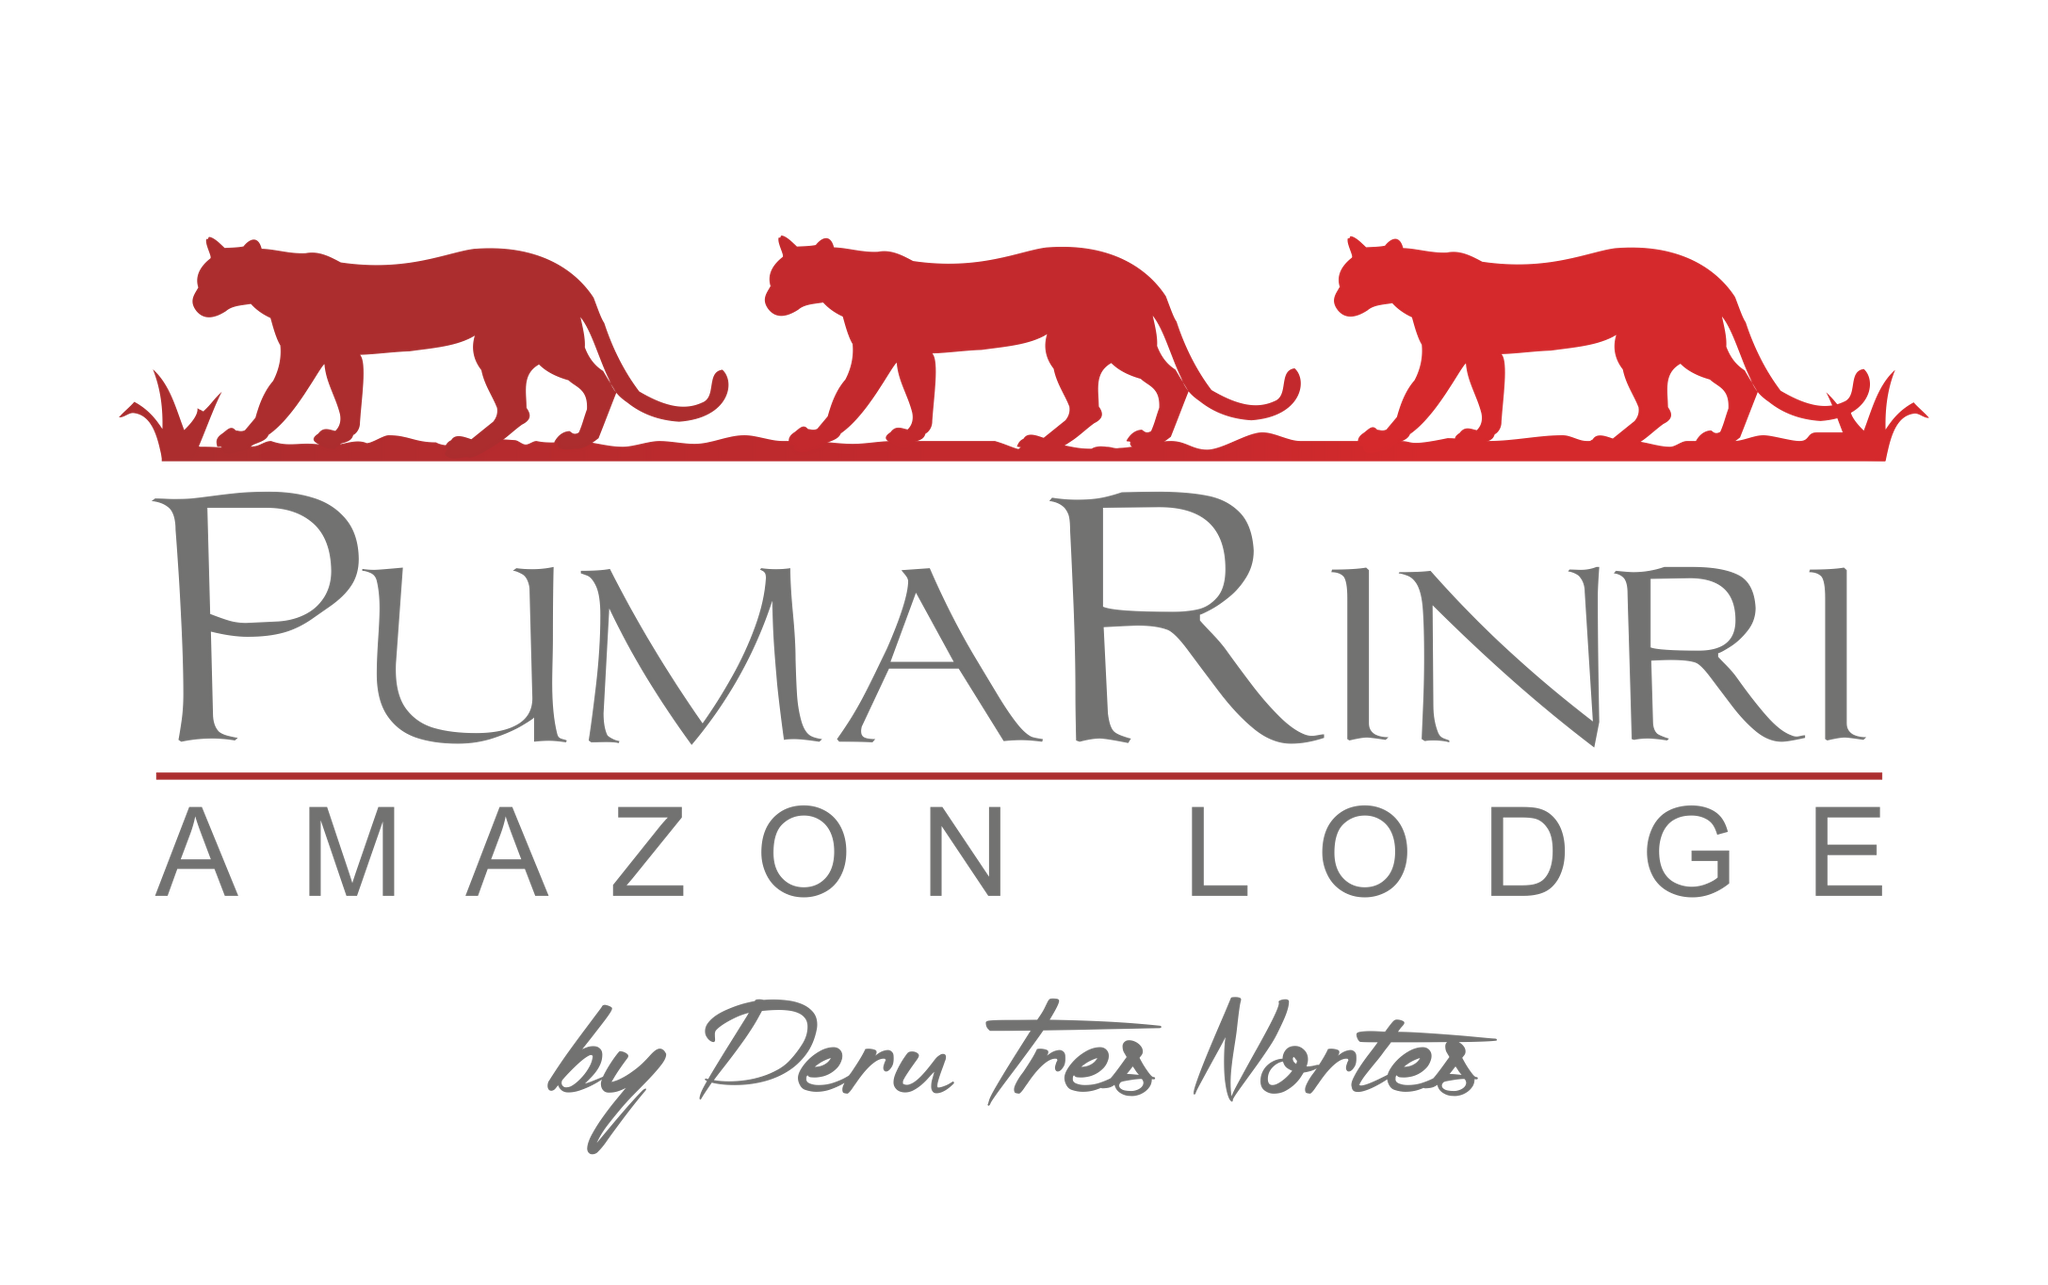 Hotel Pumarinri Amazon Lodge | Estadía doble de 2 noches con desayuno incluido